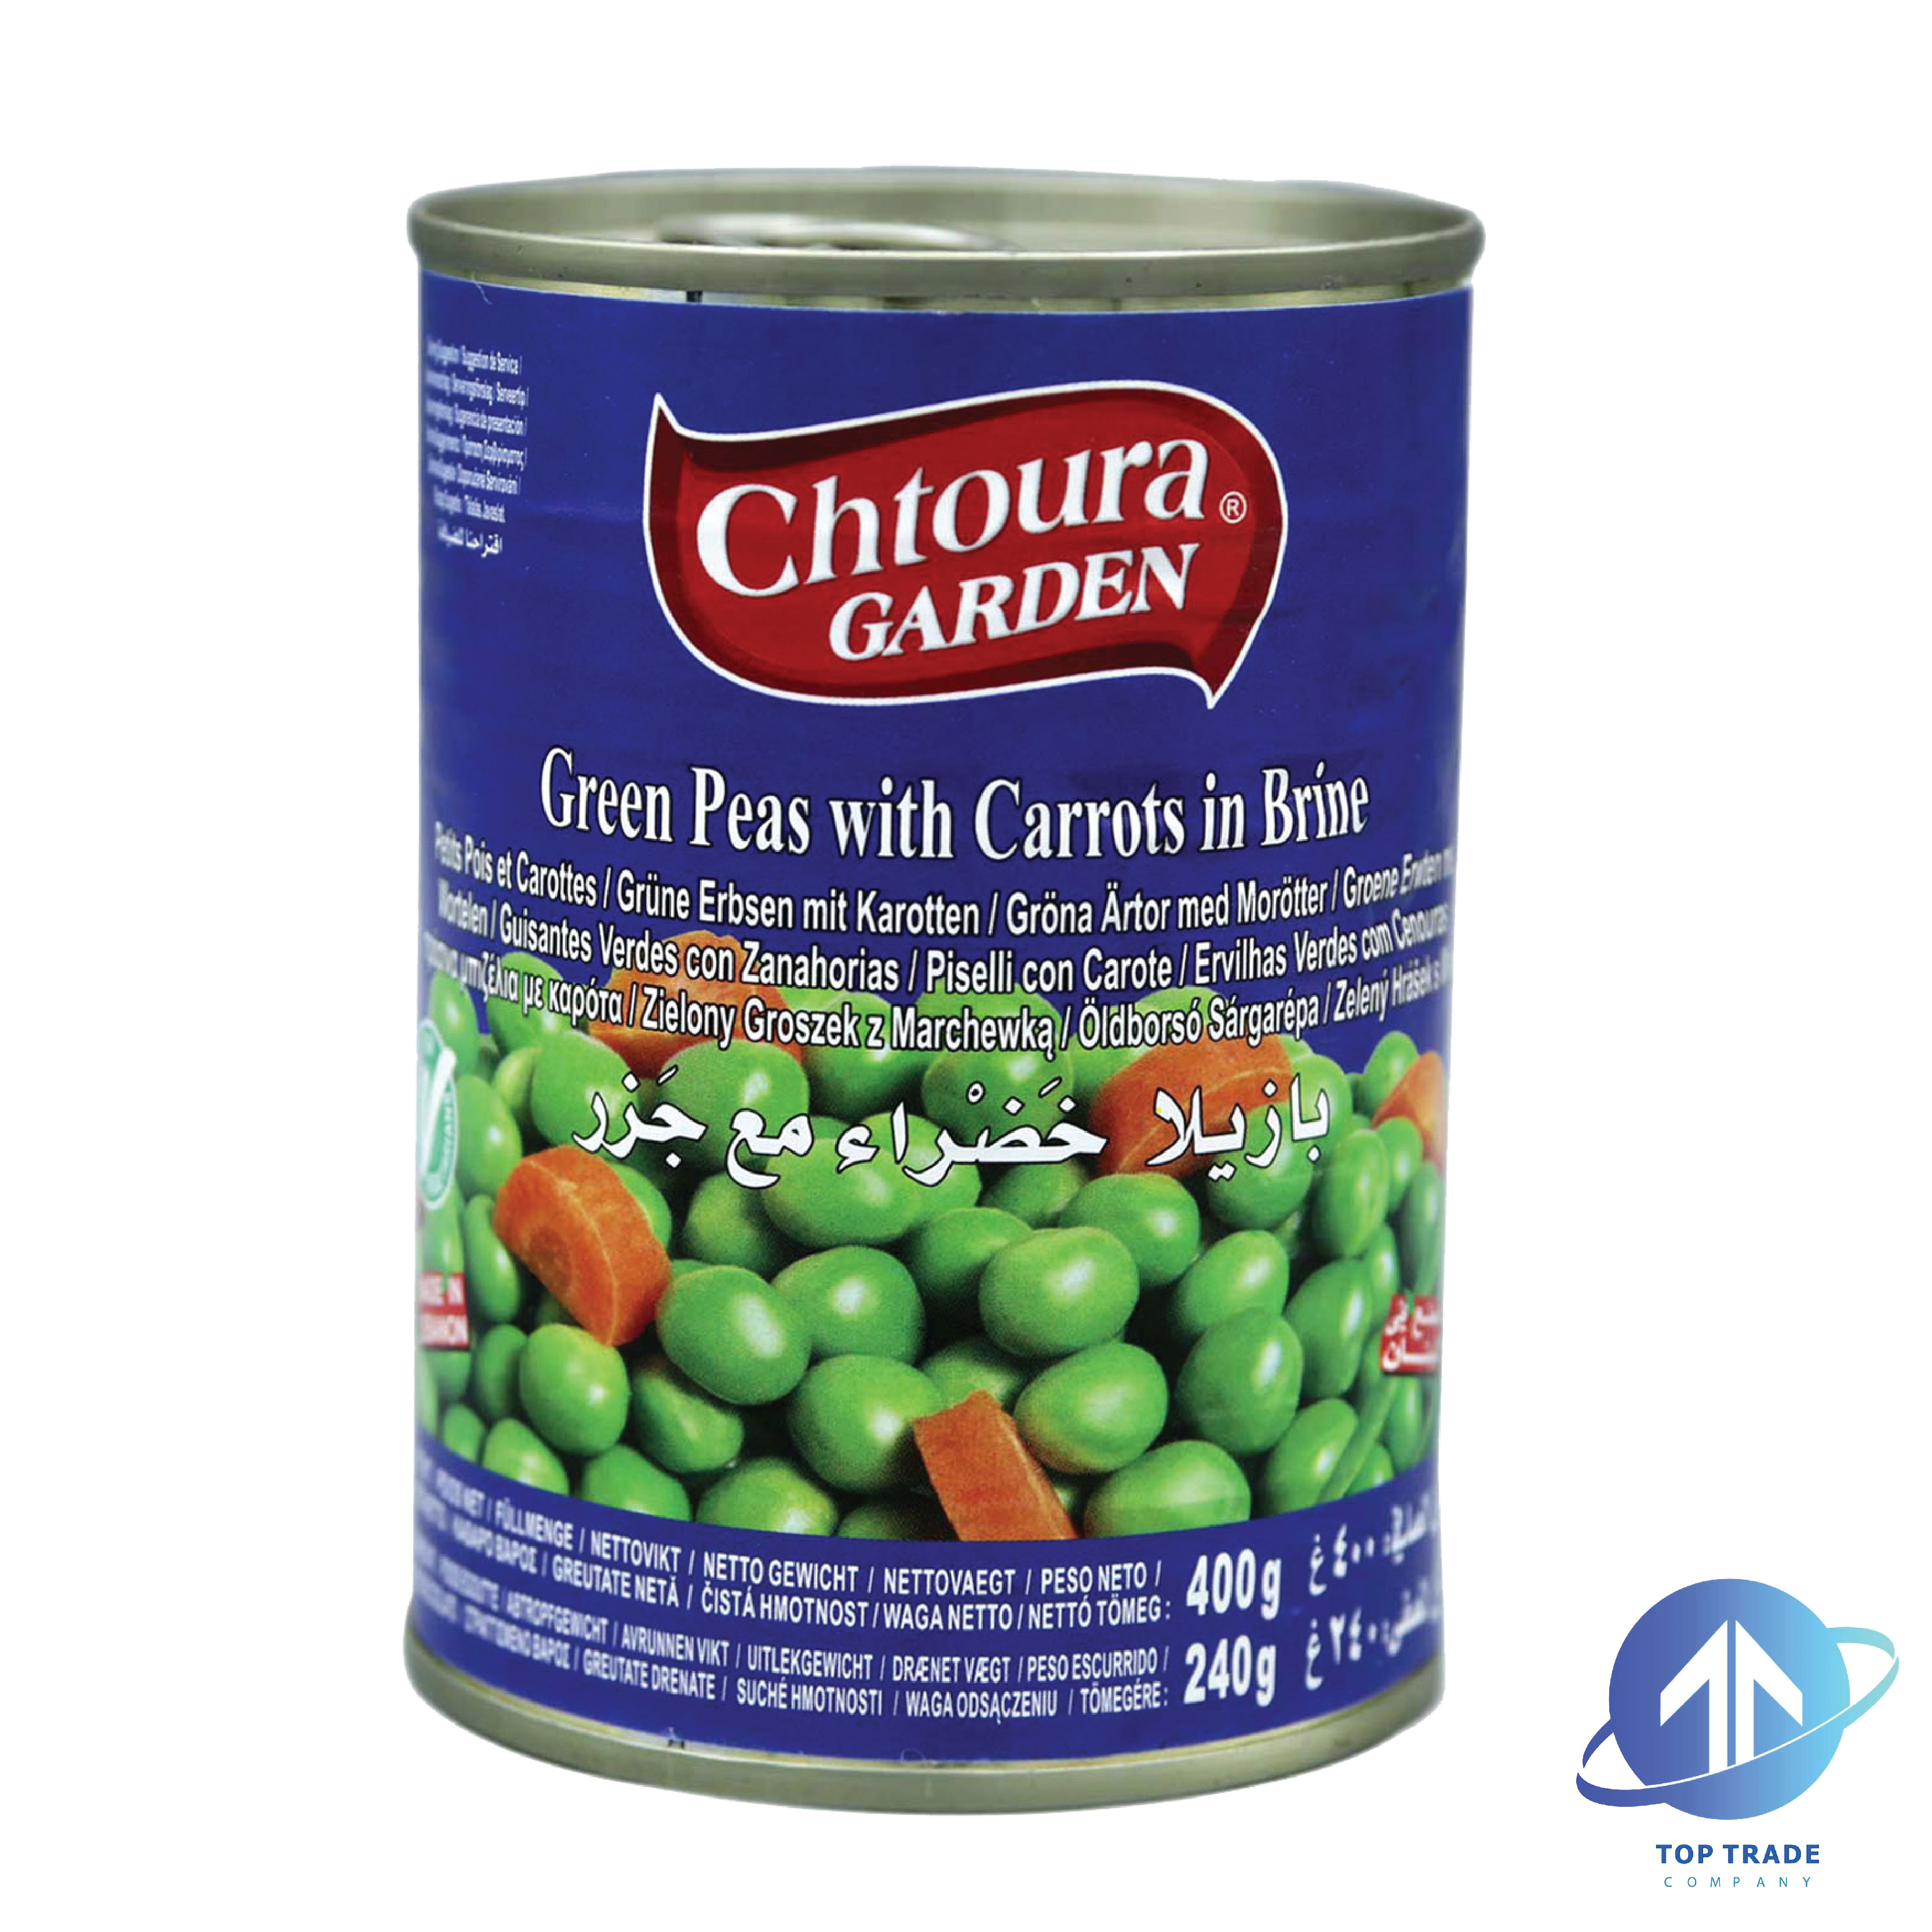 Chtoura Garden Green Peas with Carottes in Brine 400gr